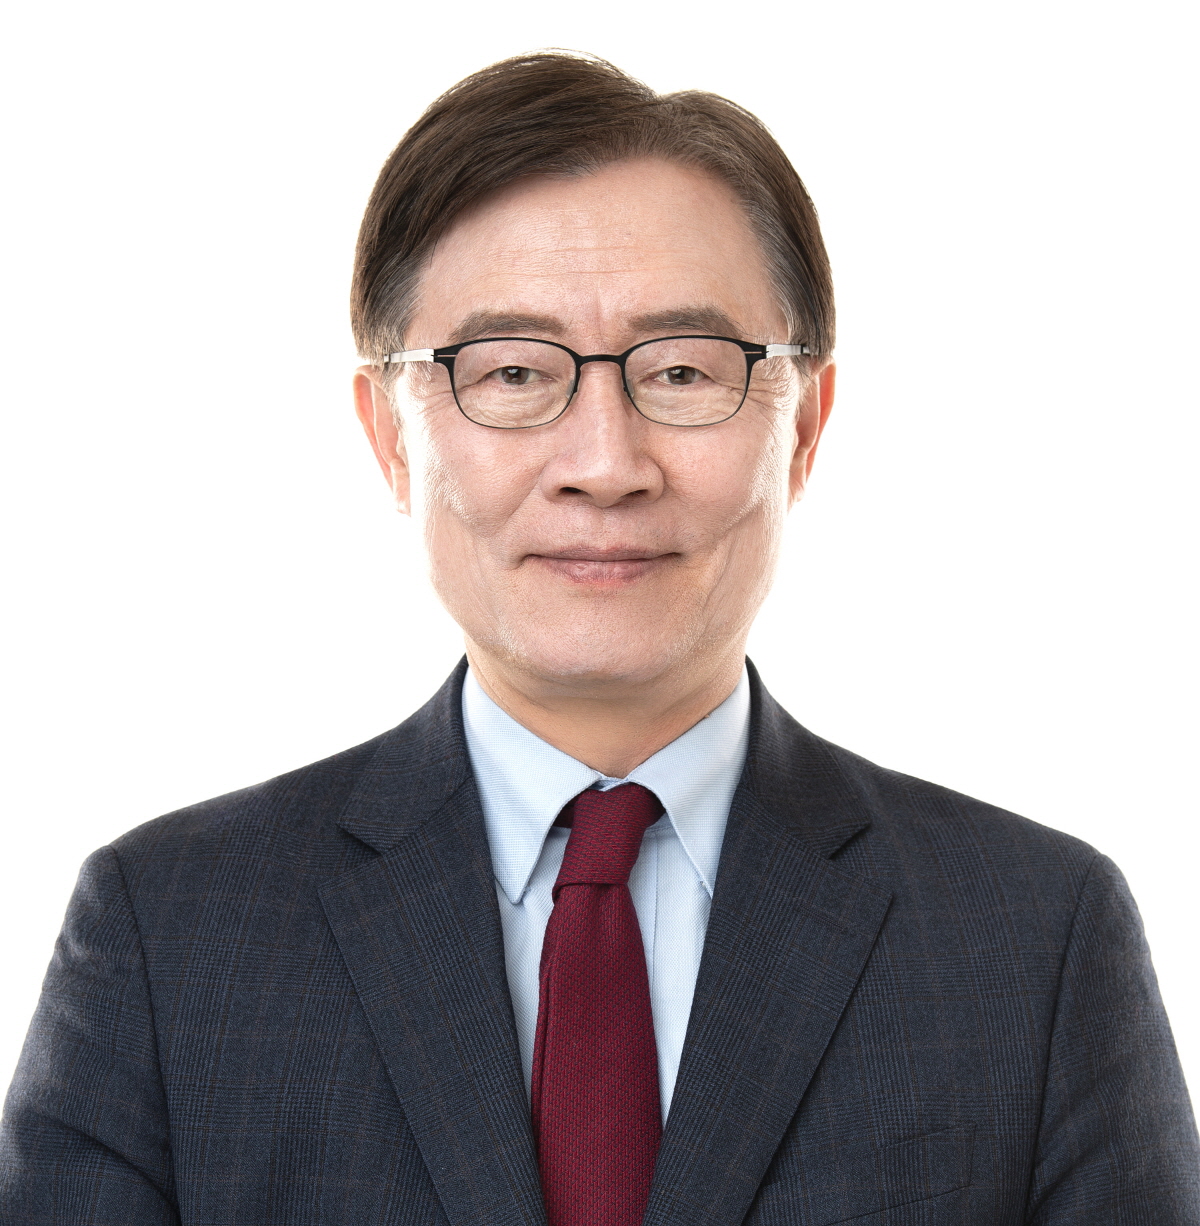 최재형 의원, 서울 종로구 예비후보 등록 ‘총선 레이스’ 돌입